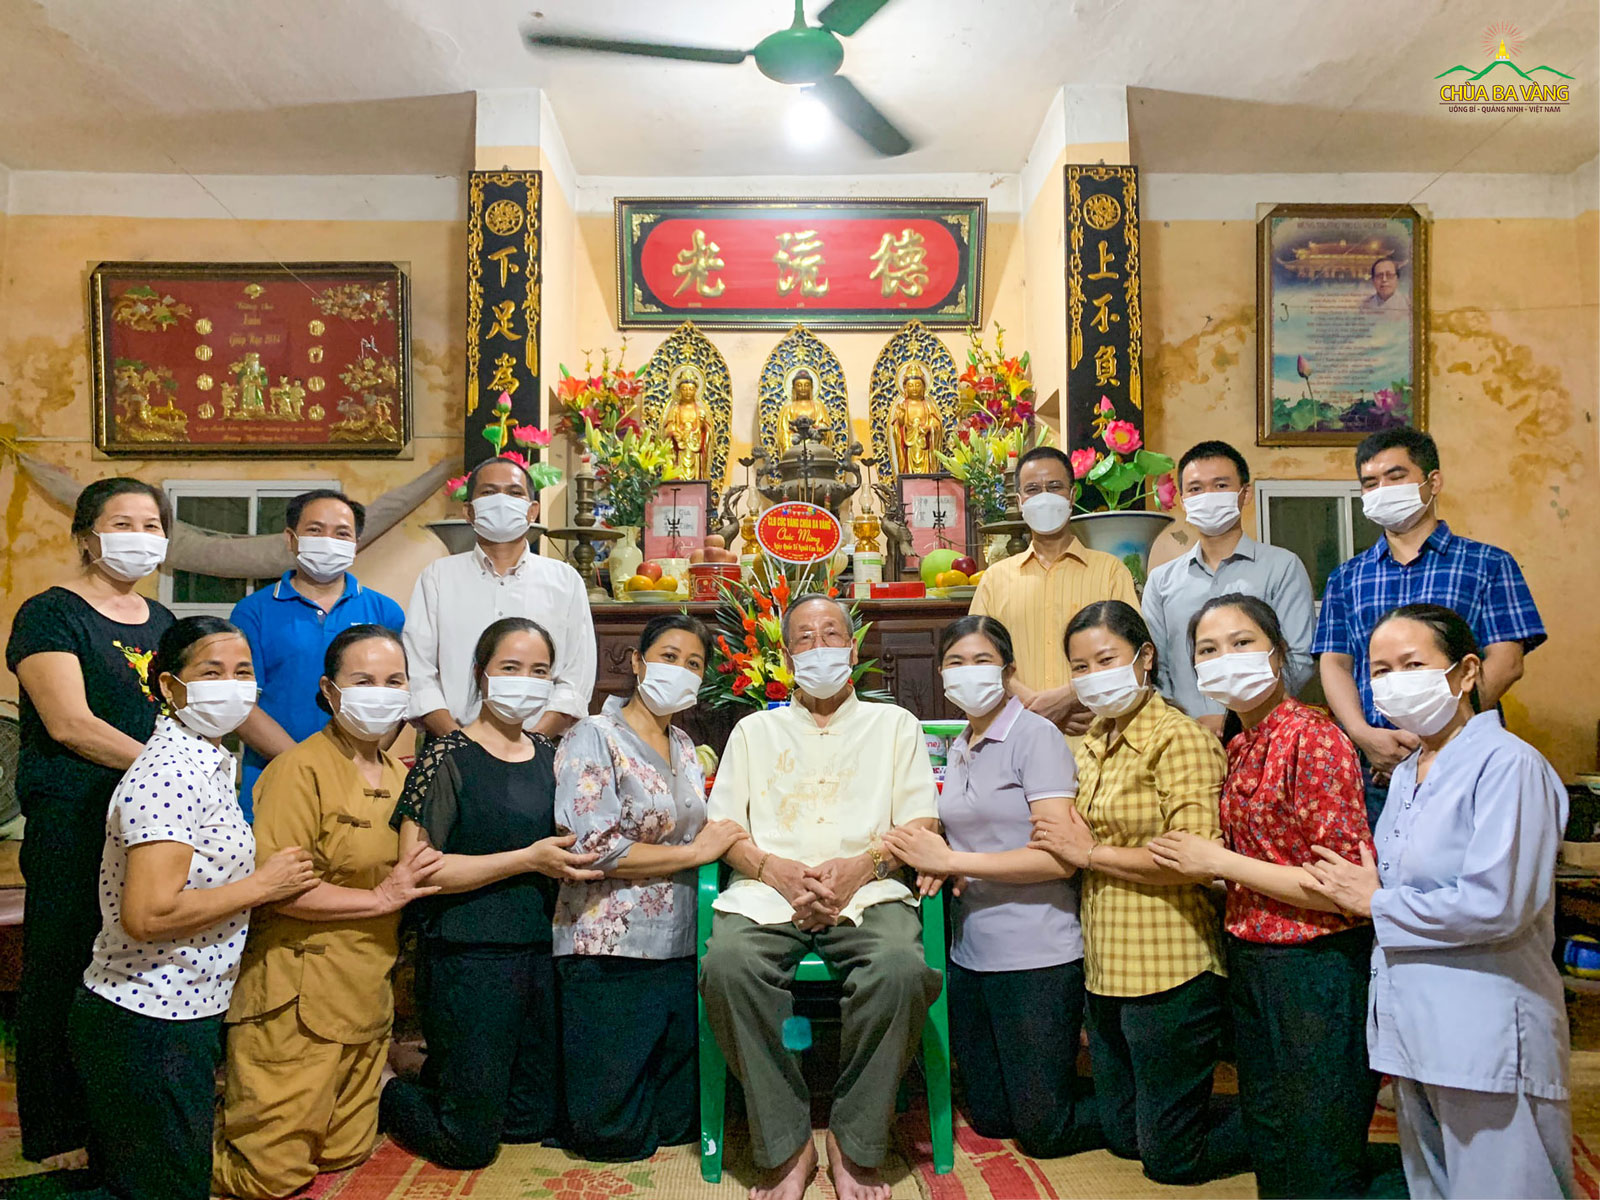 Nhân dịp Quốc tế người cao tuổi (01/10), các Phật tử trong CLB Cúc Vàng chùa Ba Vàng đã về thăm thân phụ của Sư Phụ  